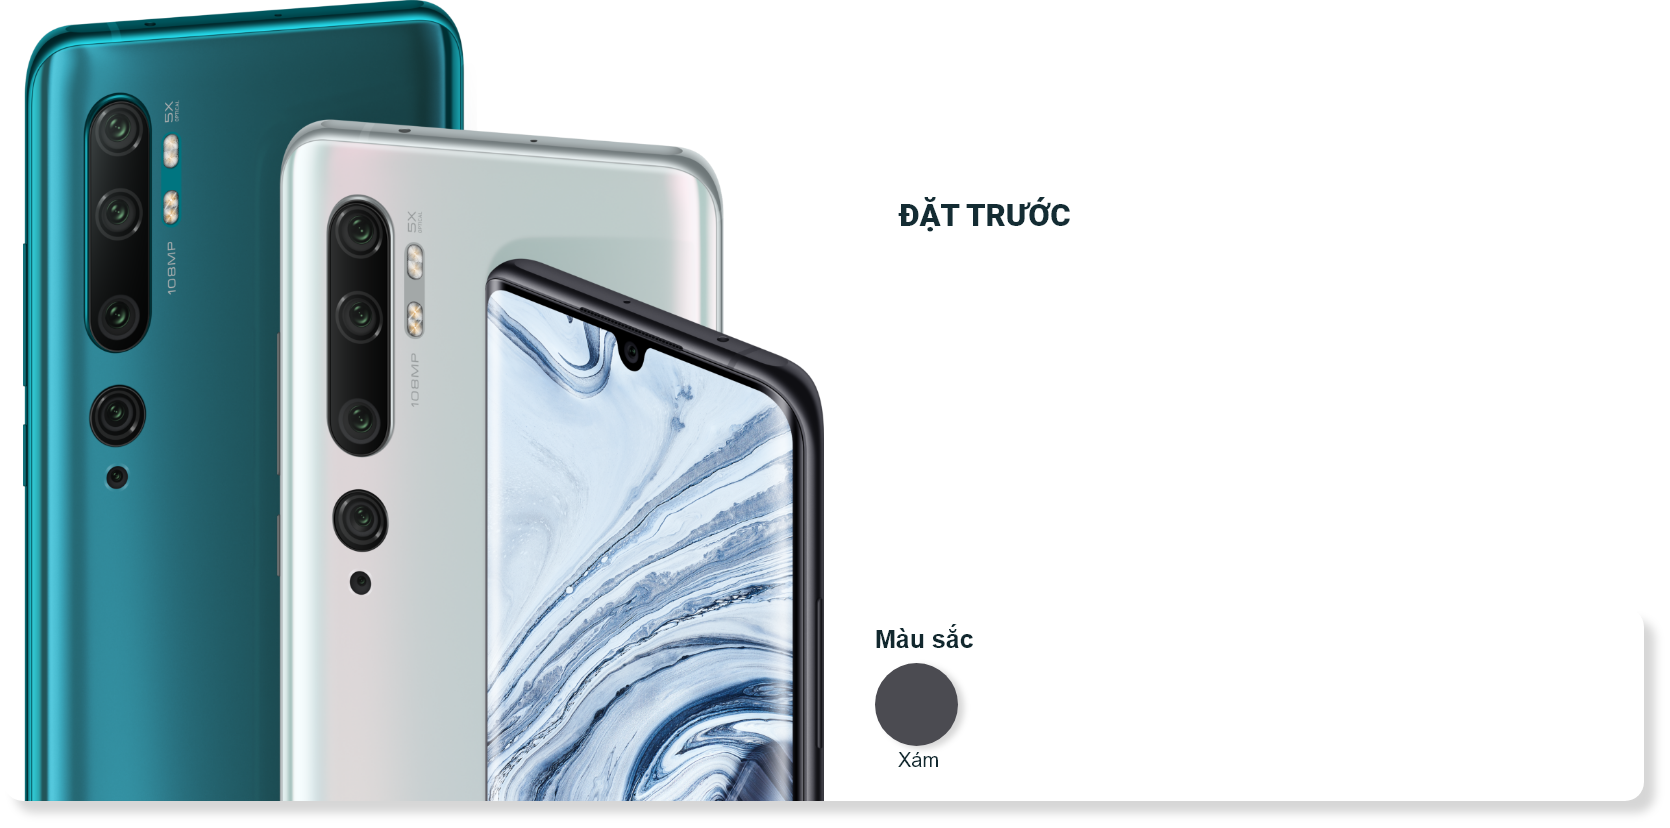 Pre order Mi Note 10 Pro